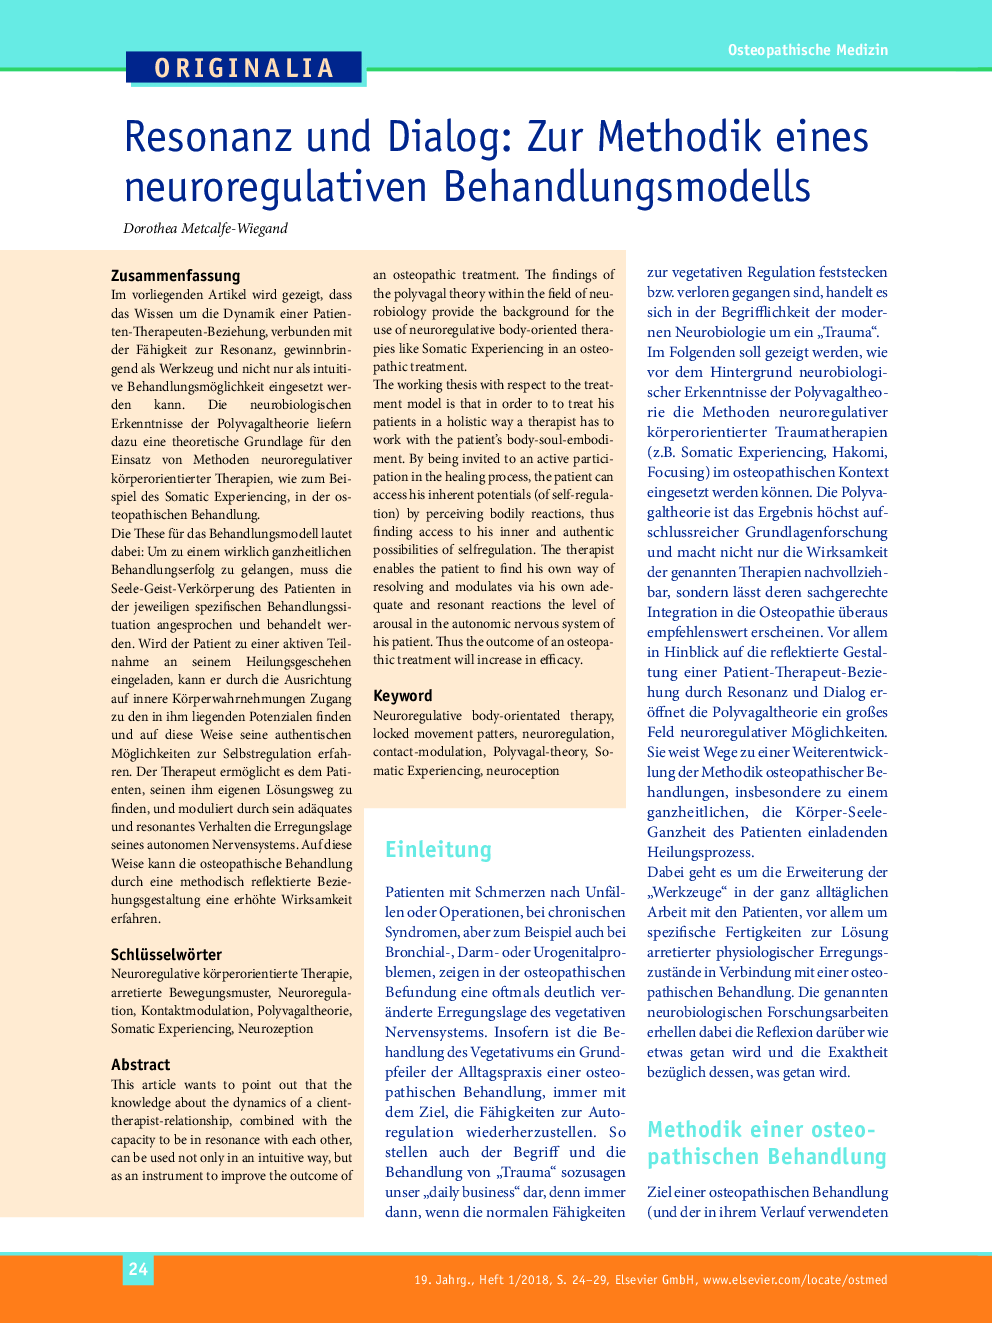 رزونانس و گفت و گو: روش یک مدل درمان نورولوژیک 